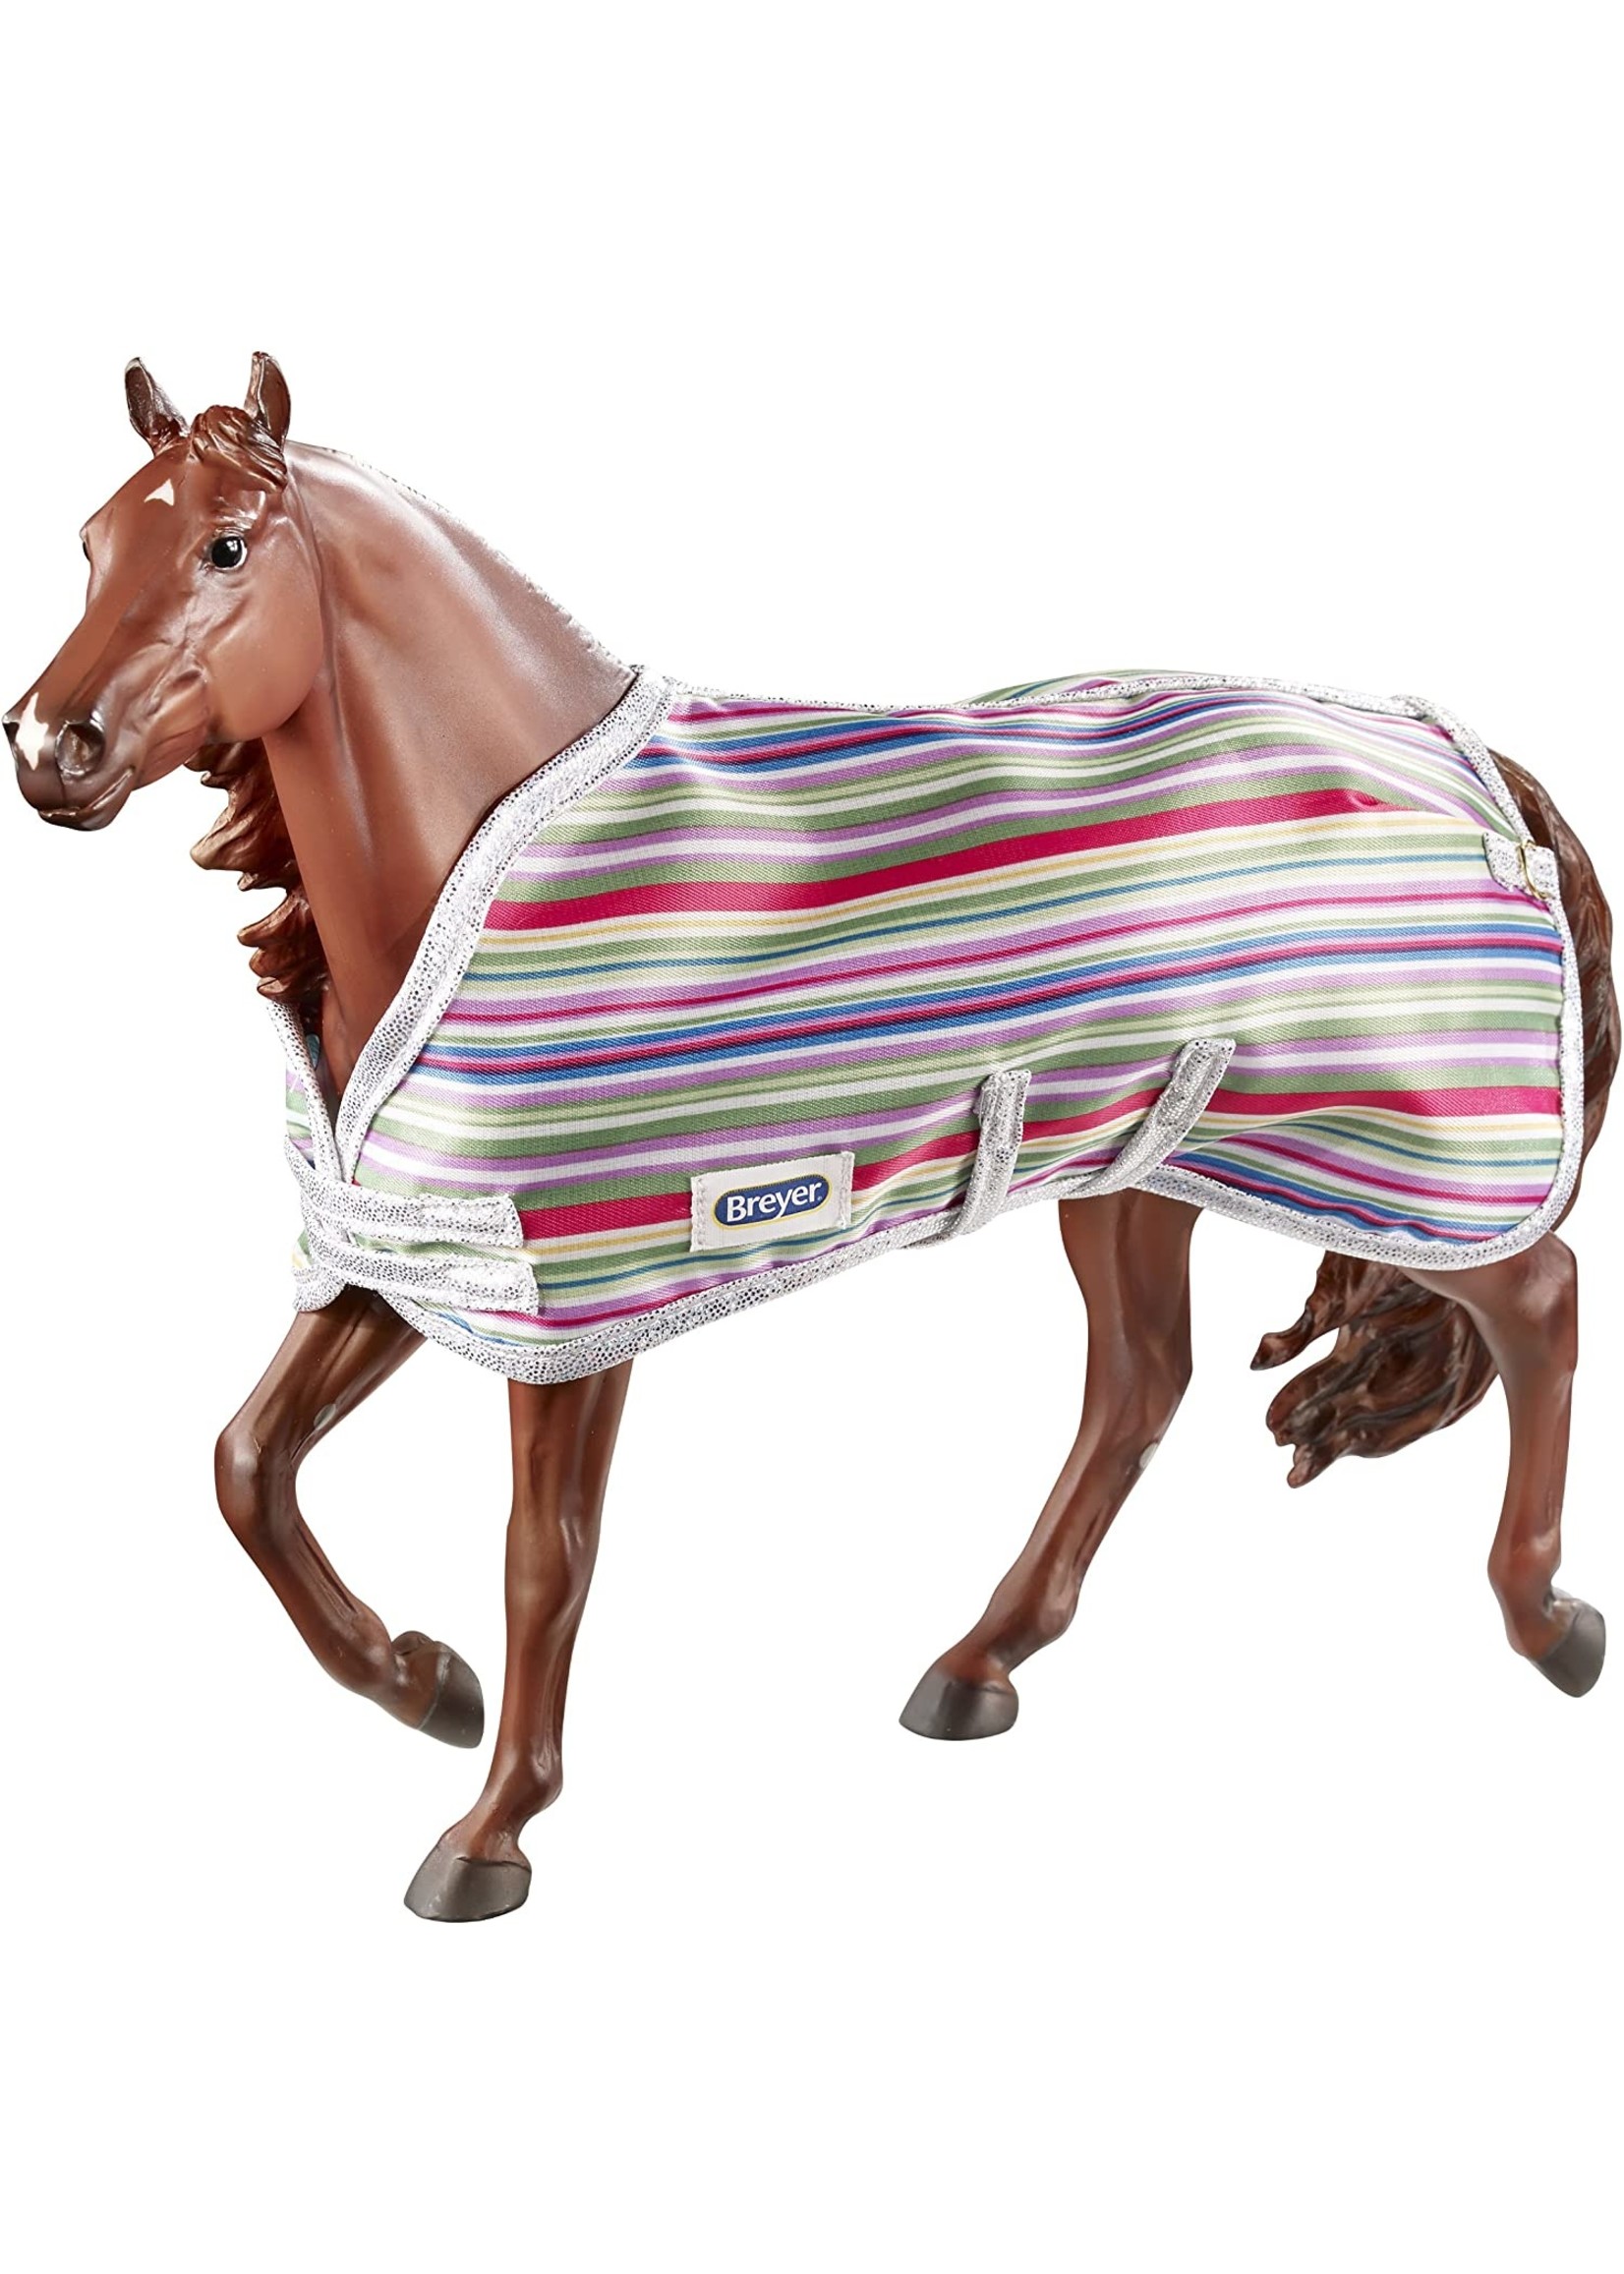 Breyer Colorful Stable Blanket Asst /4